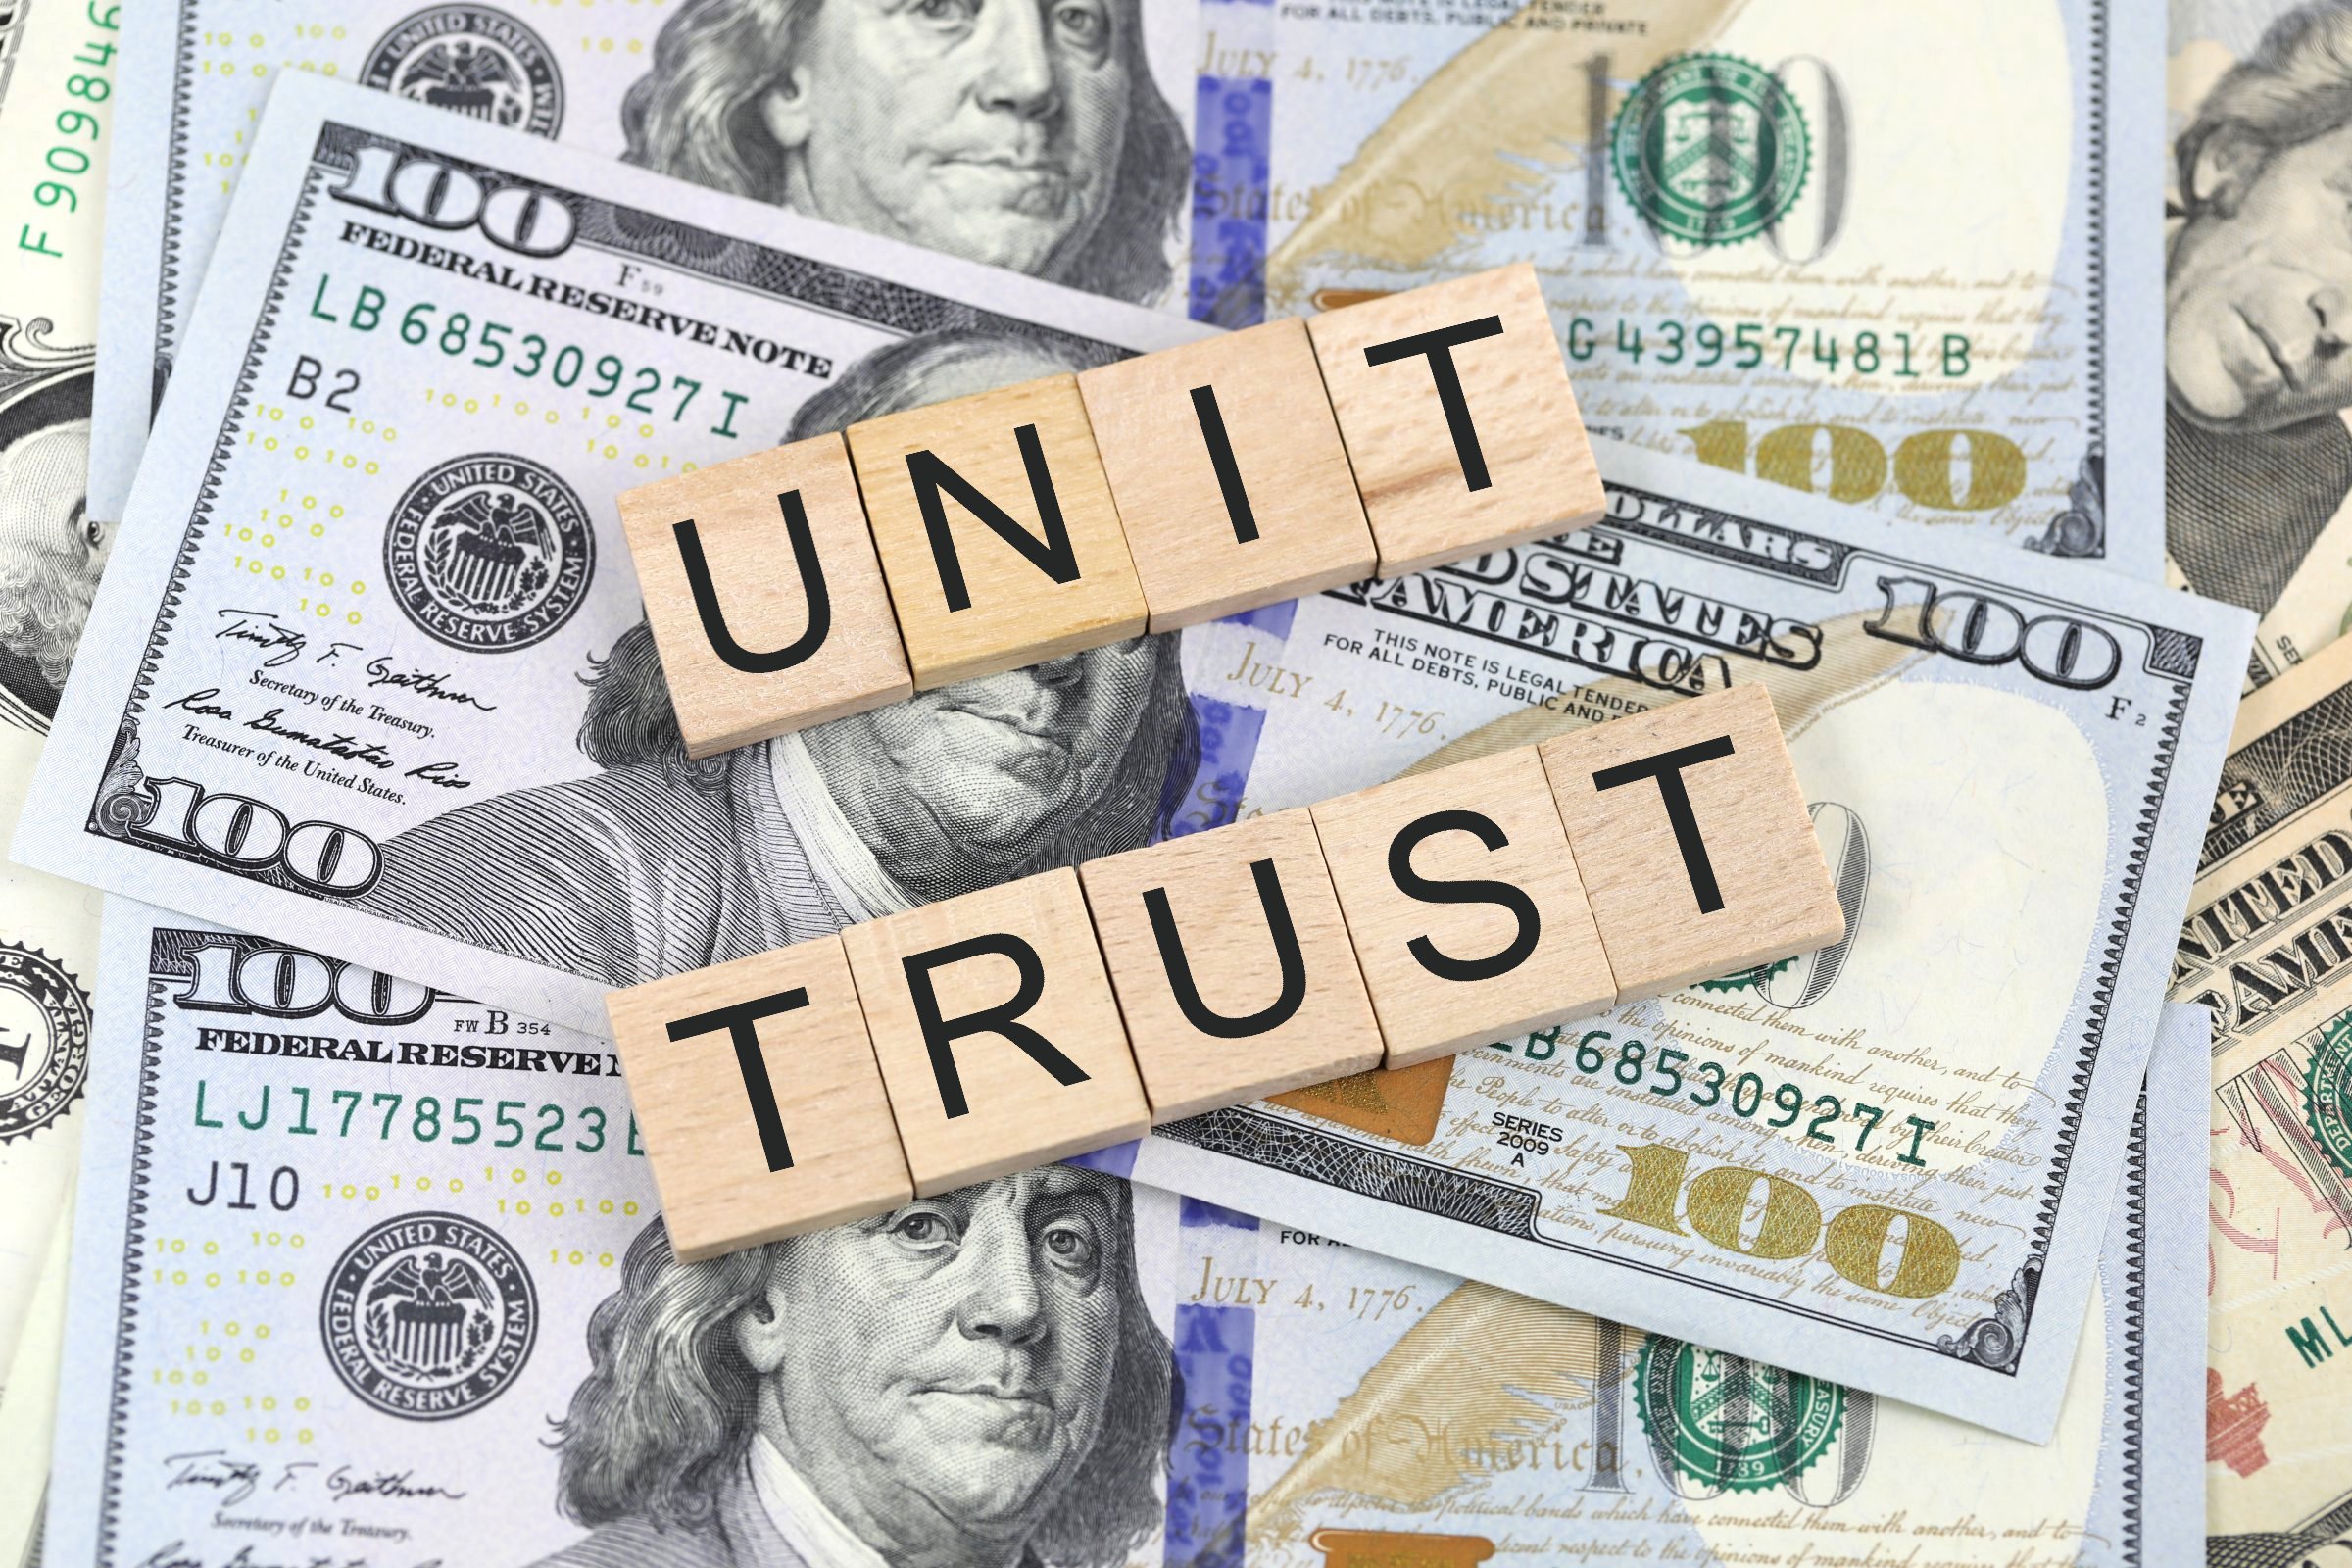 unit trust